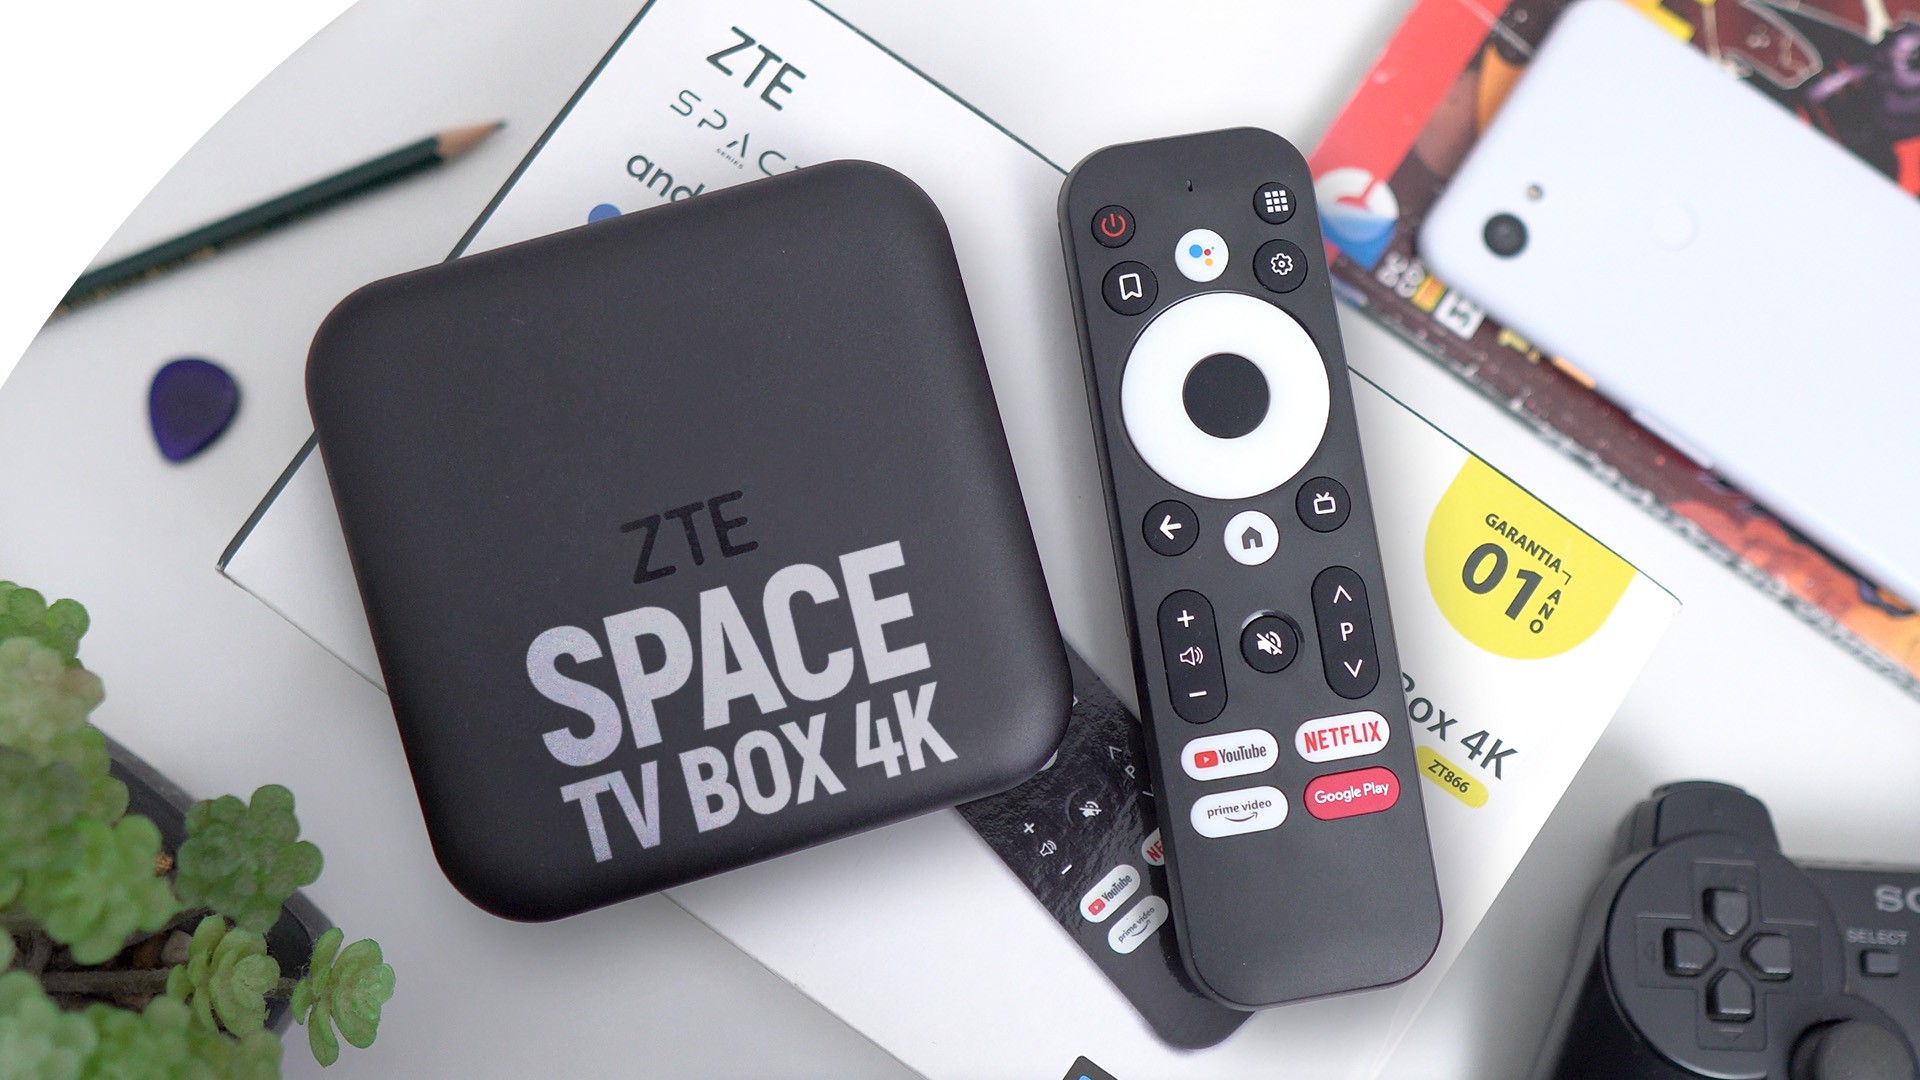 ZTE Space TV Box 4K ZT866: cuando el entretenimiento se encuentra con el precio |  análisis